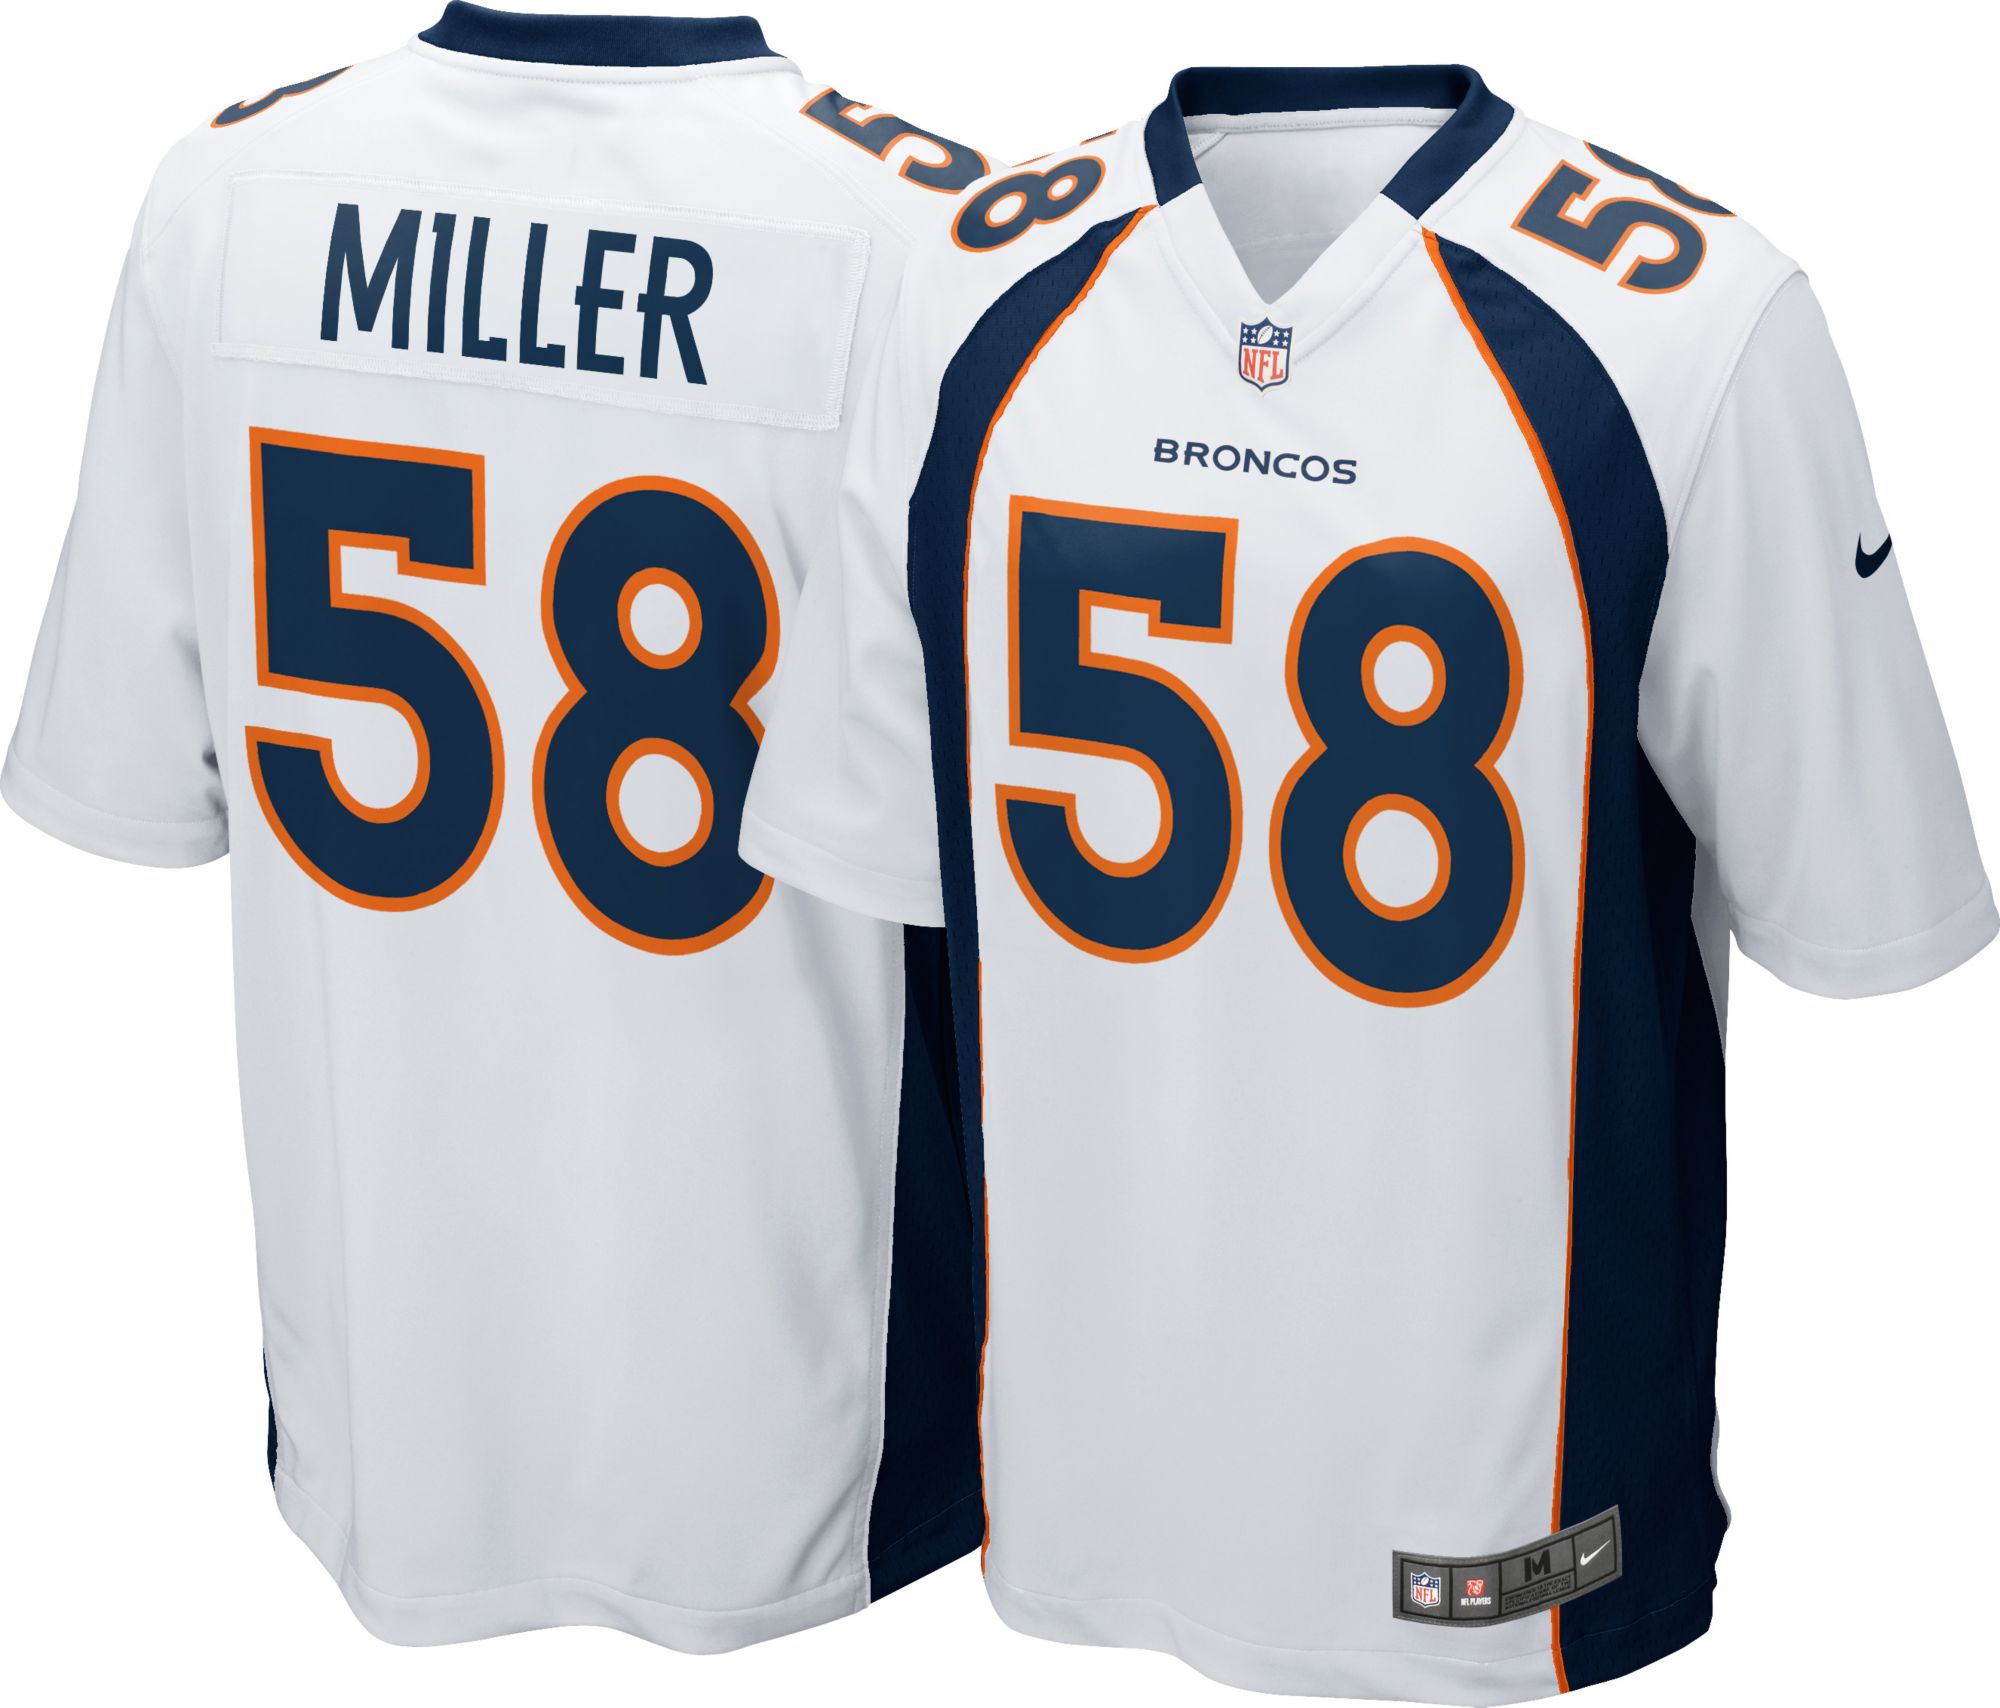 von miller official jersey